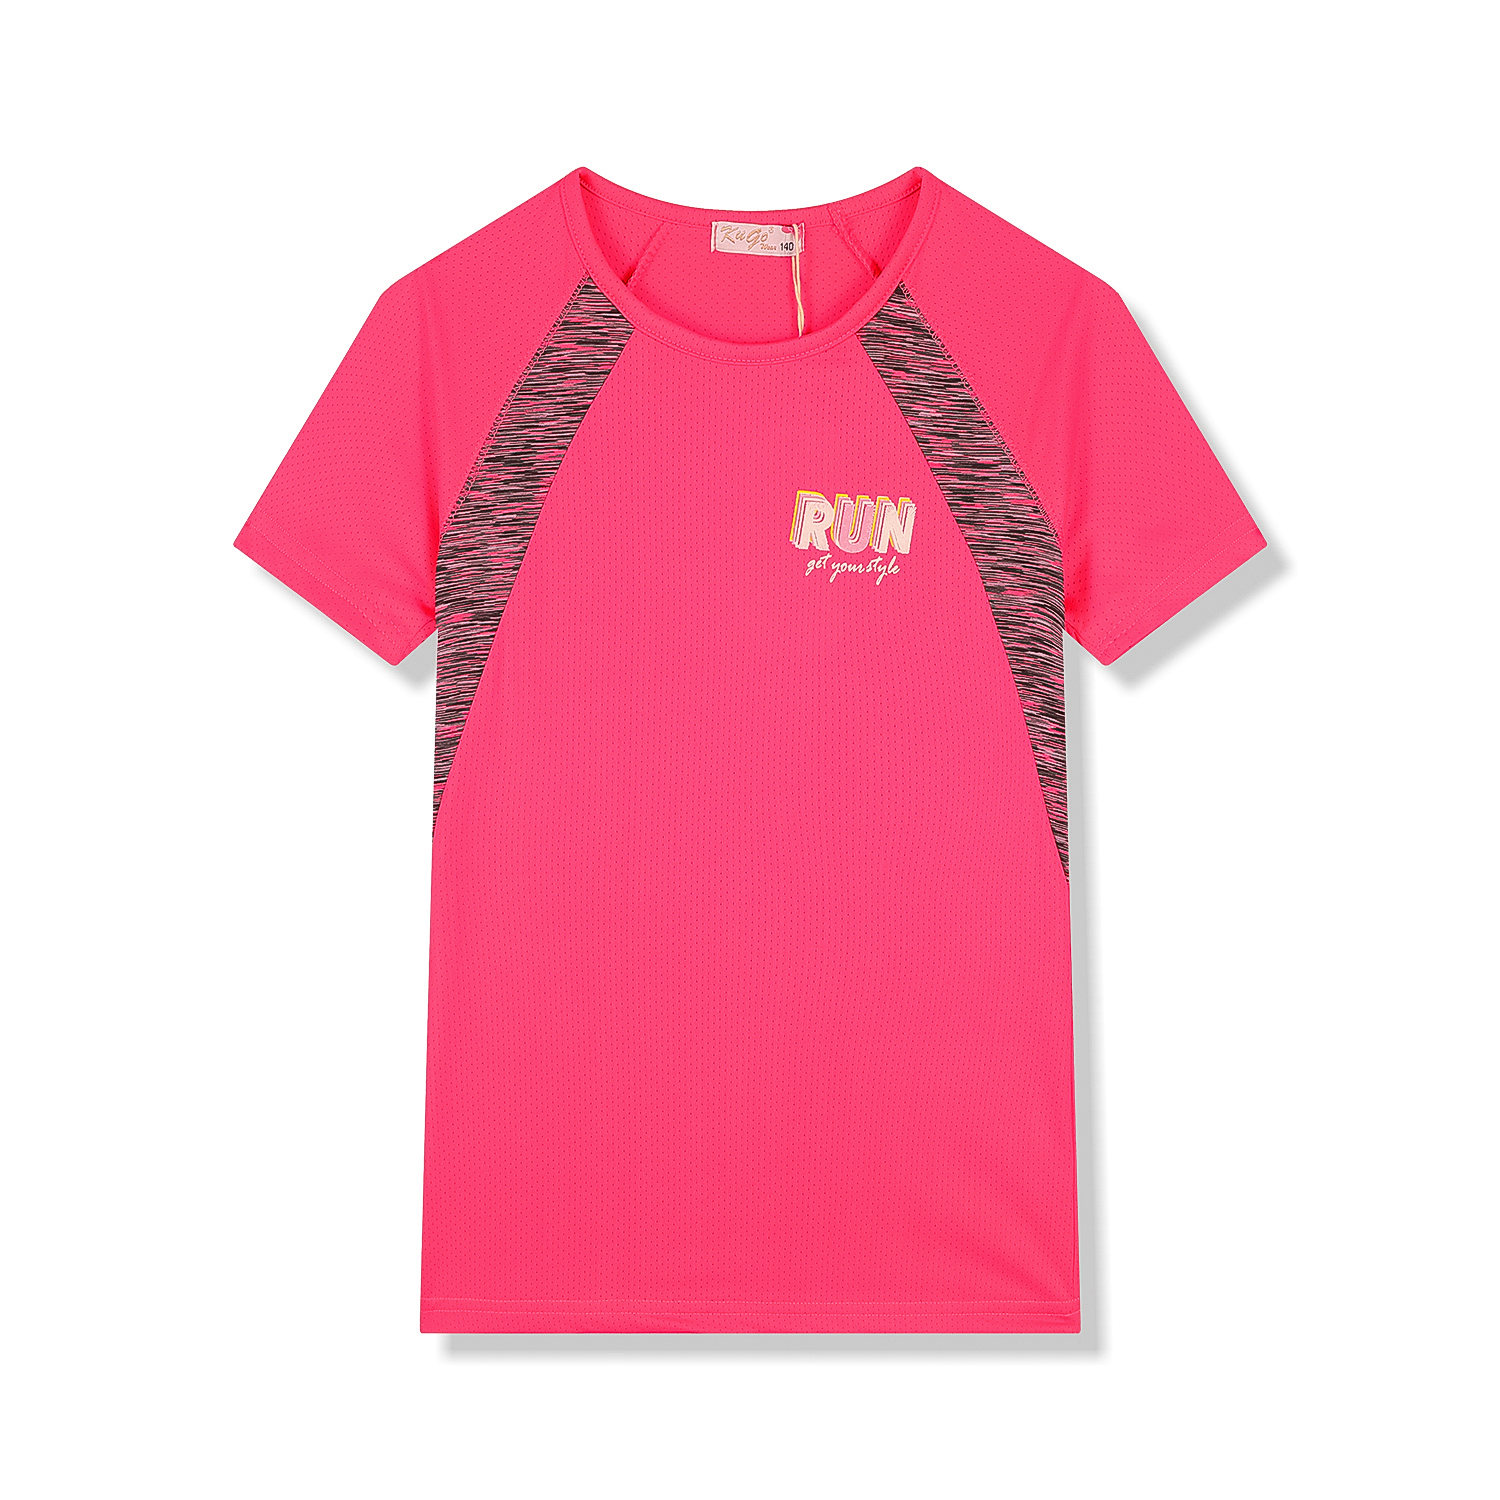 Dívčí funkční tričko - KUGO FC6756, sytě růžová Barva: Růžová, Velikost: 140